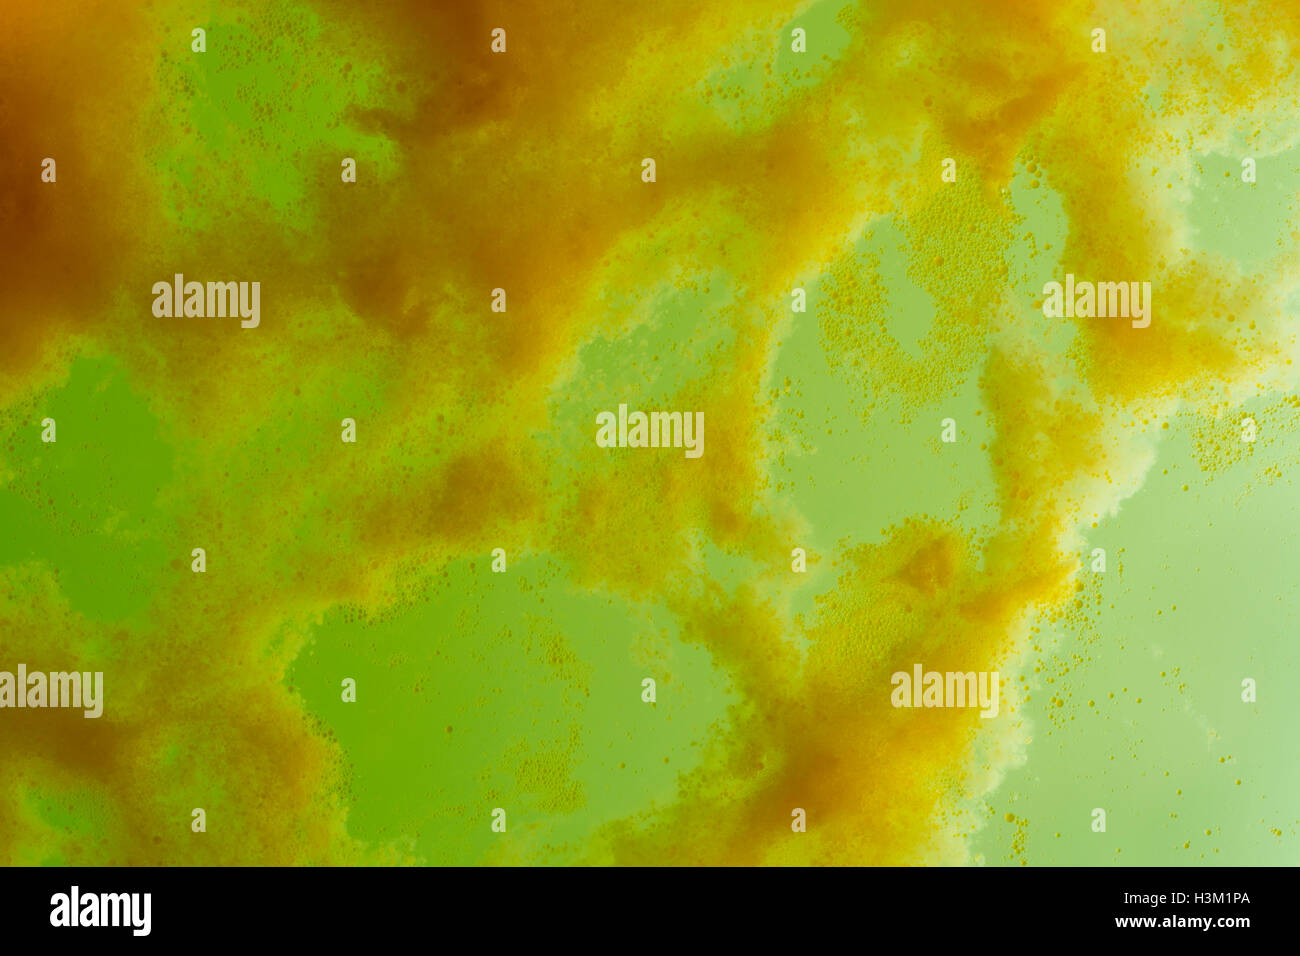 Image abstraite des acides de l'eau savonneuse - bulles montrant minute gouttelettes et quelques bulles dans le liquide savonneux vert. Banque D'Images